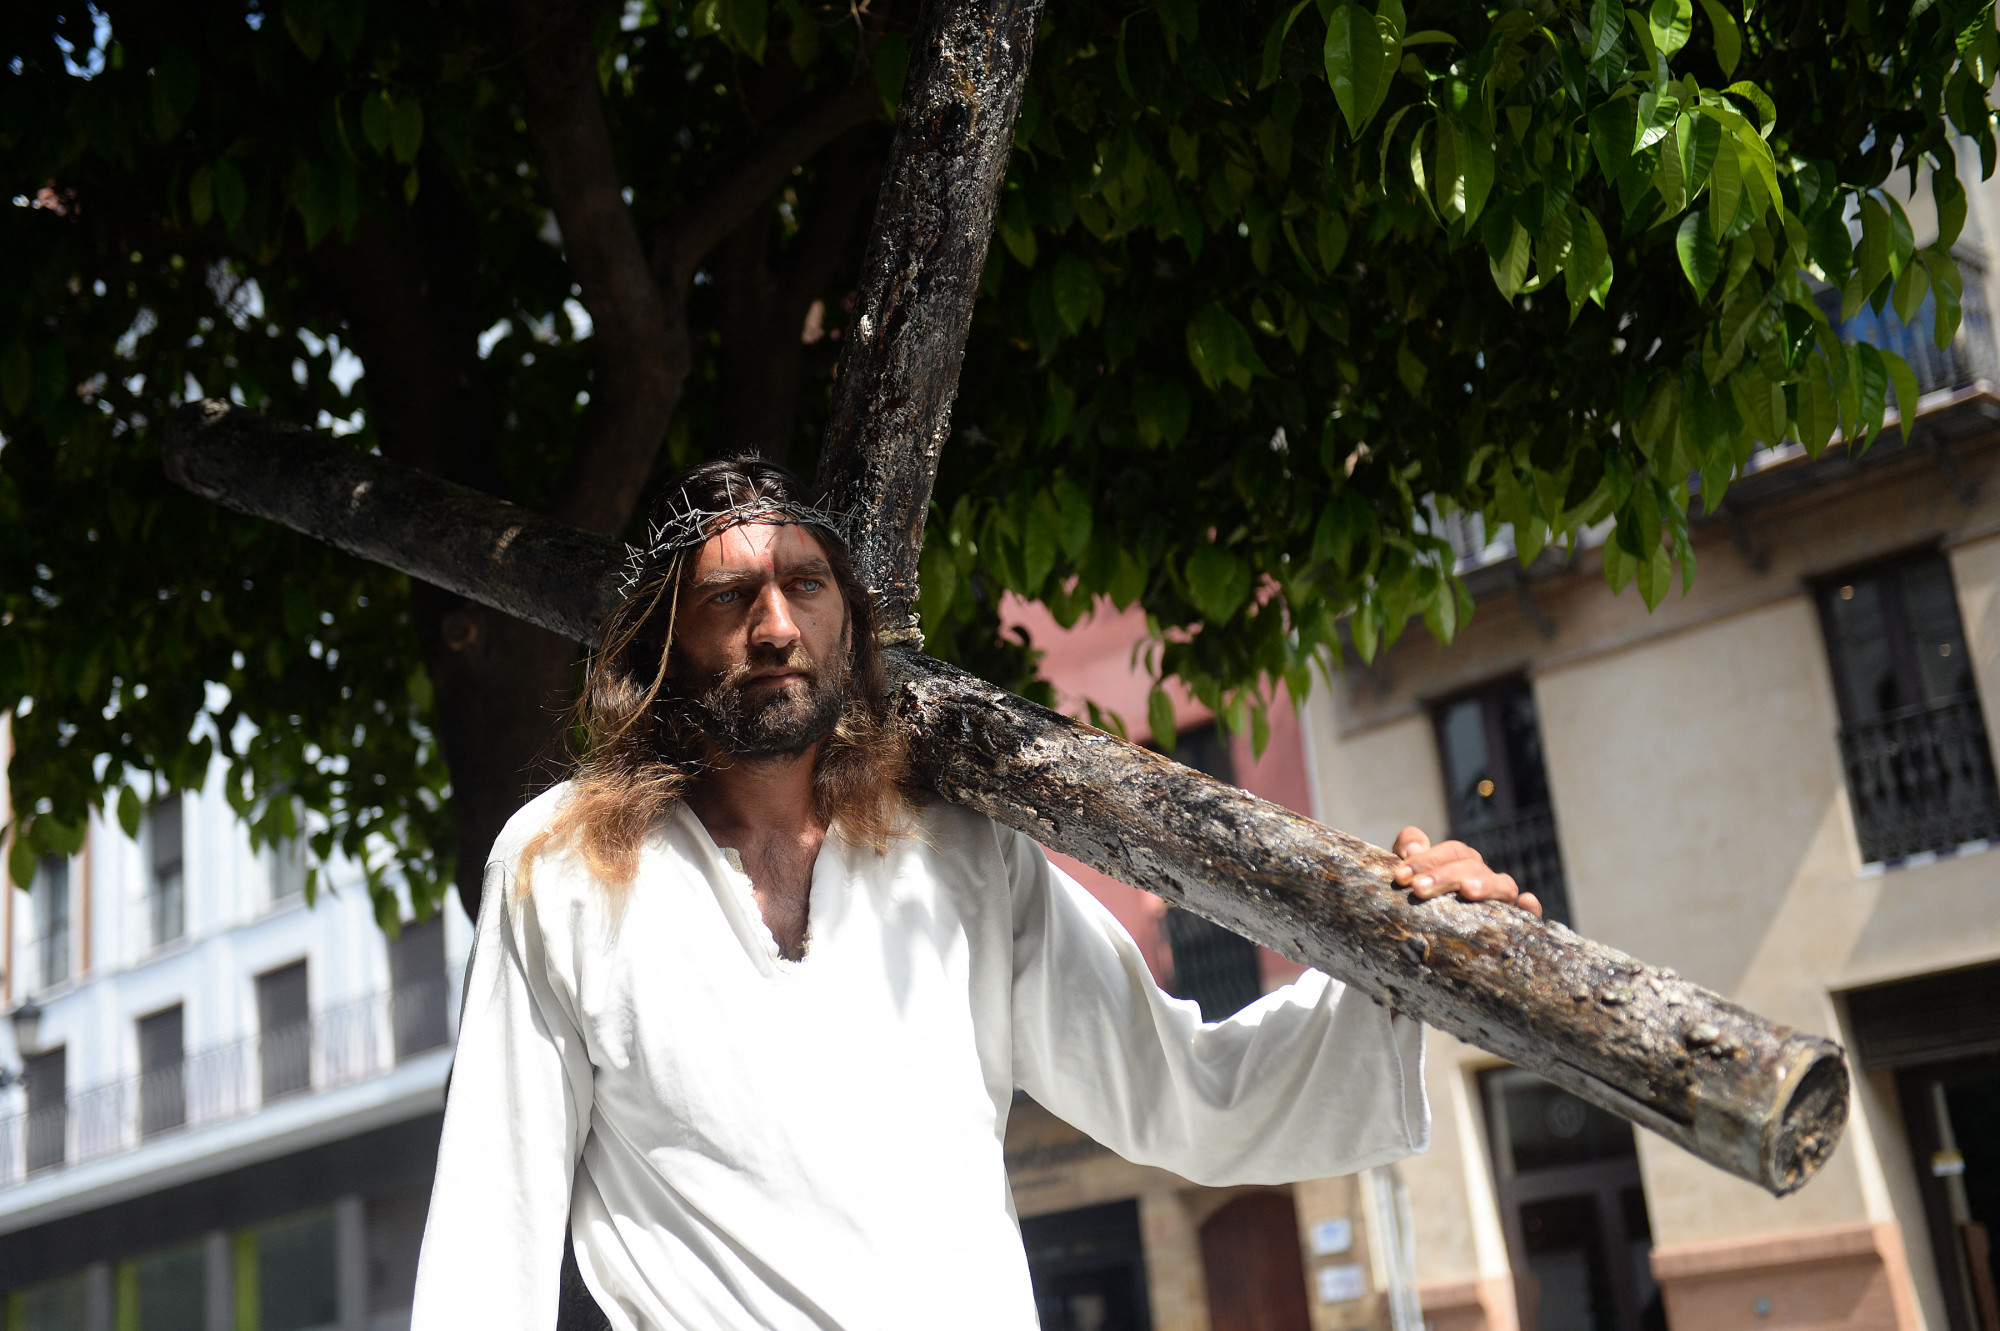 Jézusnak adta ki magát egy zalai férfi, jó pénzért gyógyított is